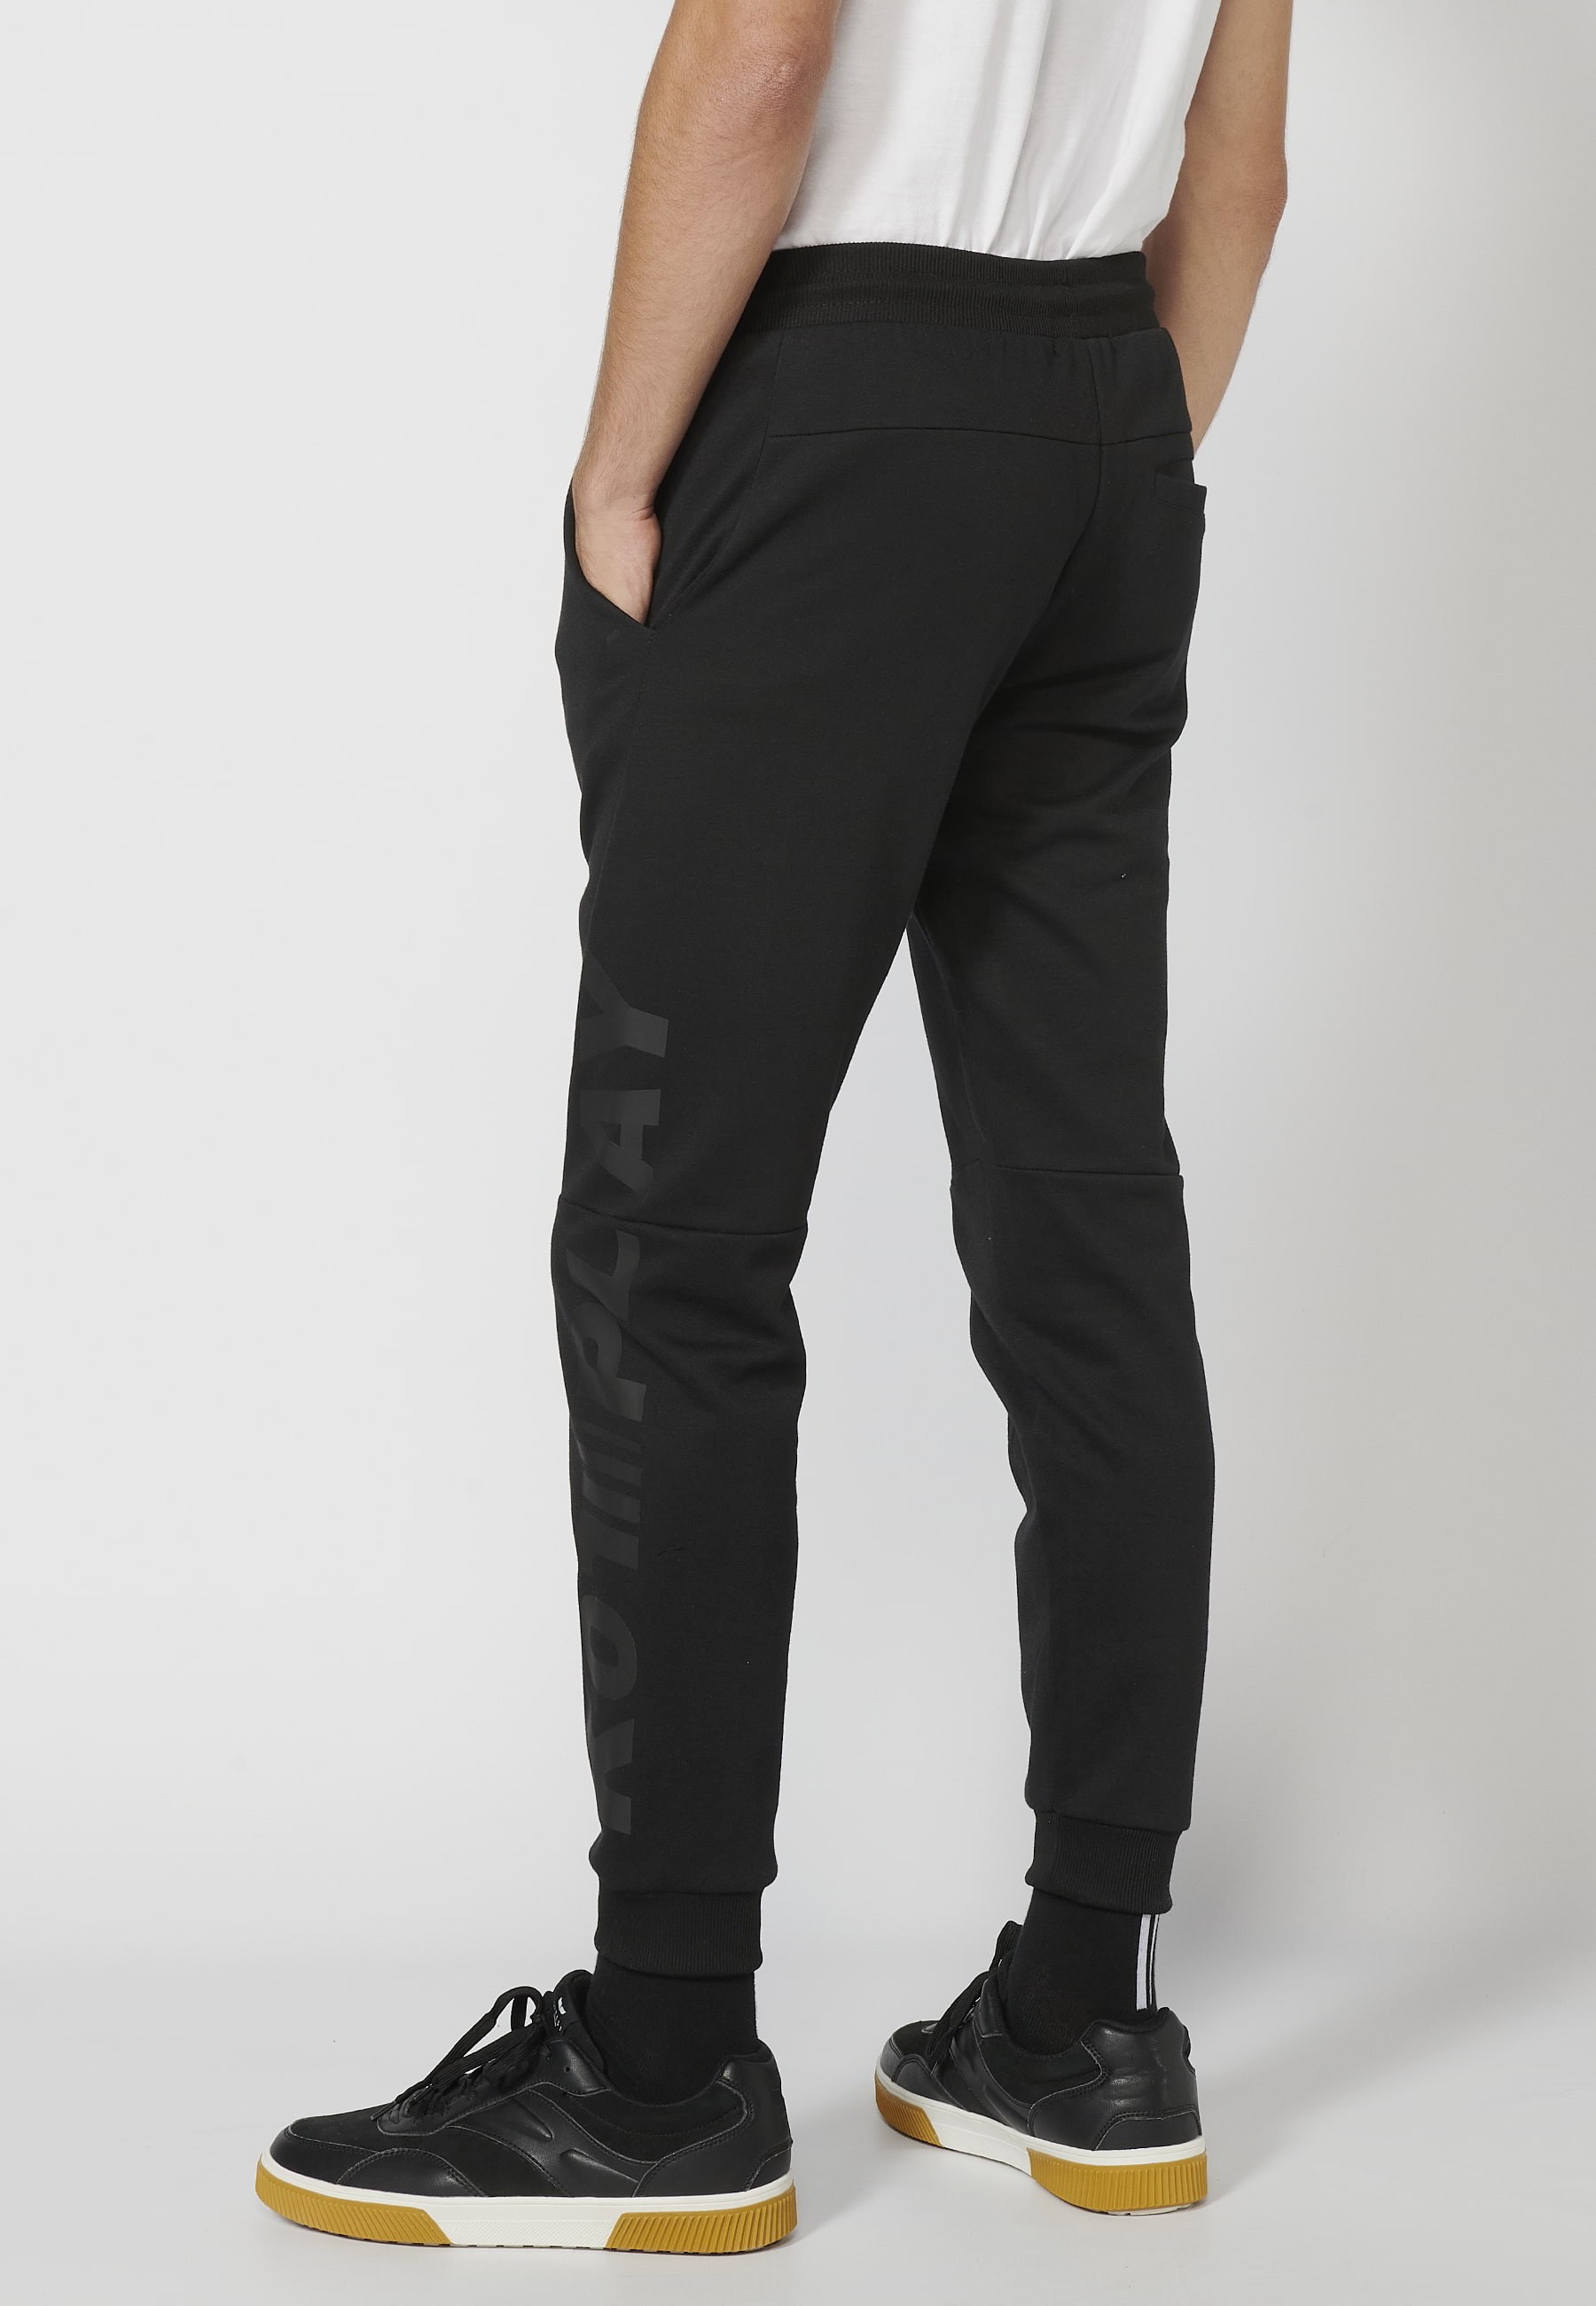 Pantalón Deportivo largo jogger con cintura elástica ajustable, detalle en bolsillo, color Negro para Hombre